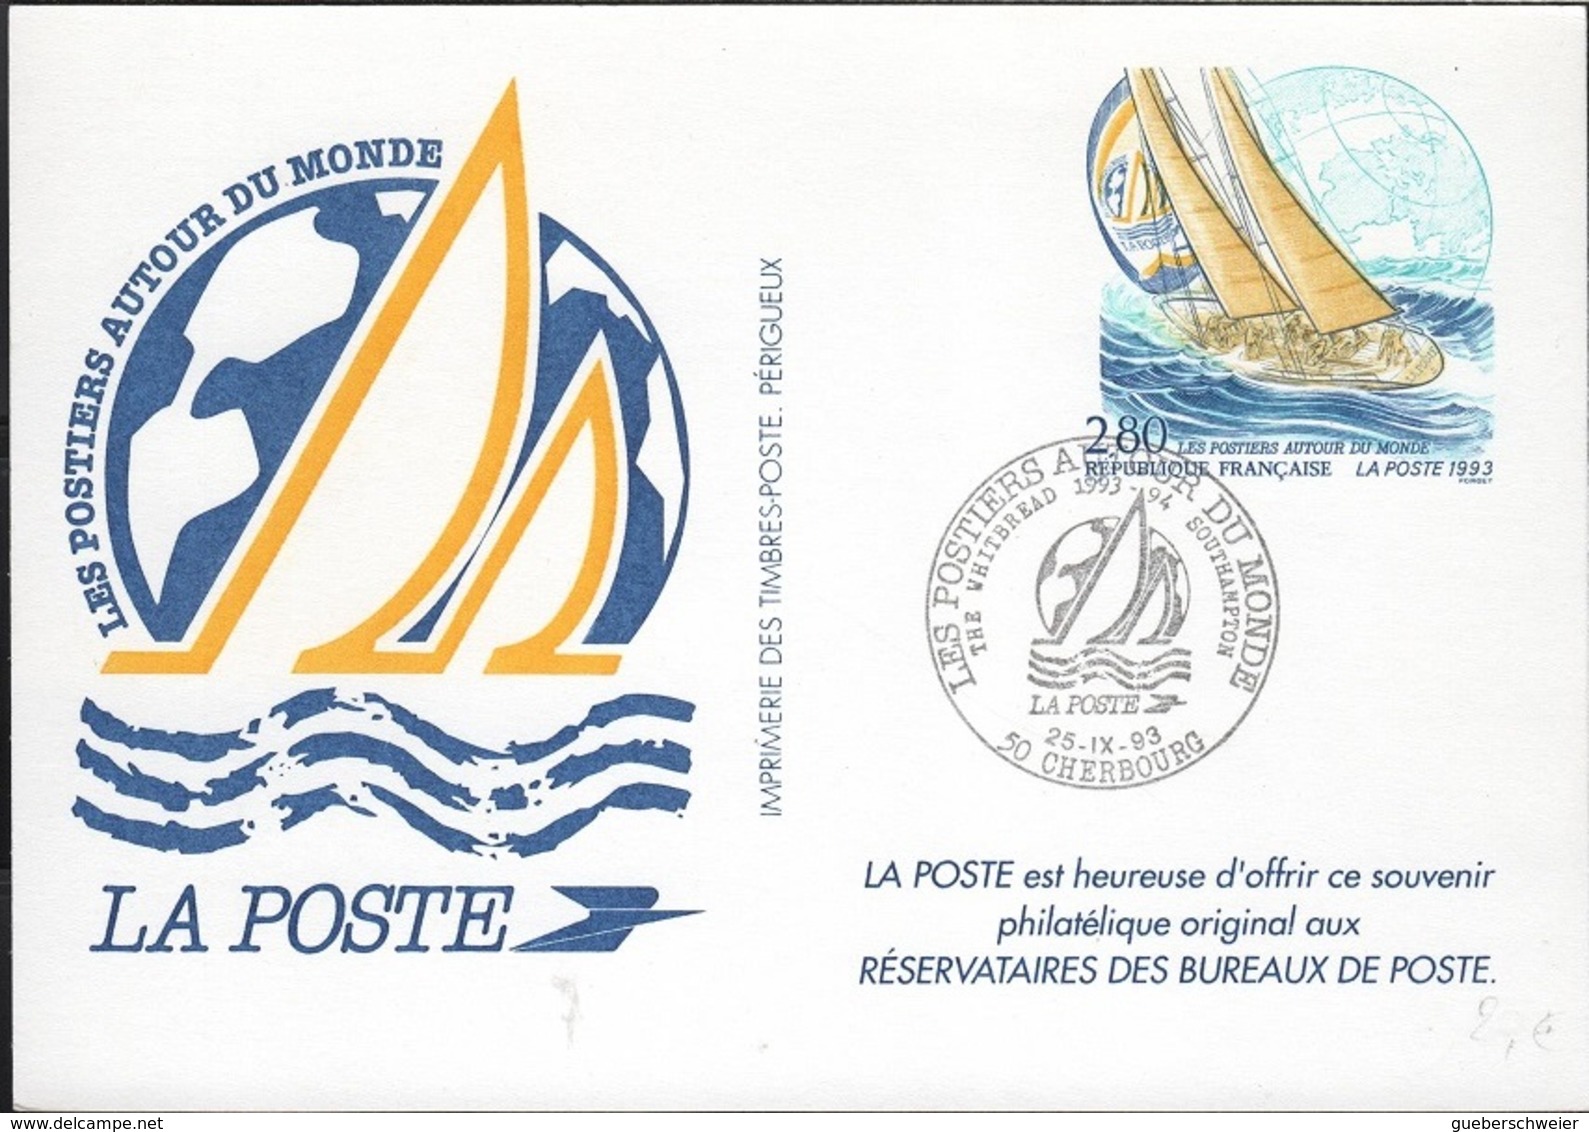 NAU-L47 - FRANCE Les Postiers Autour Du Monde Cherbourg - Private Stationery